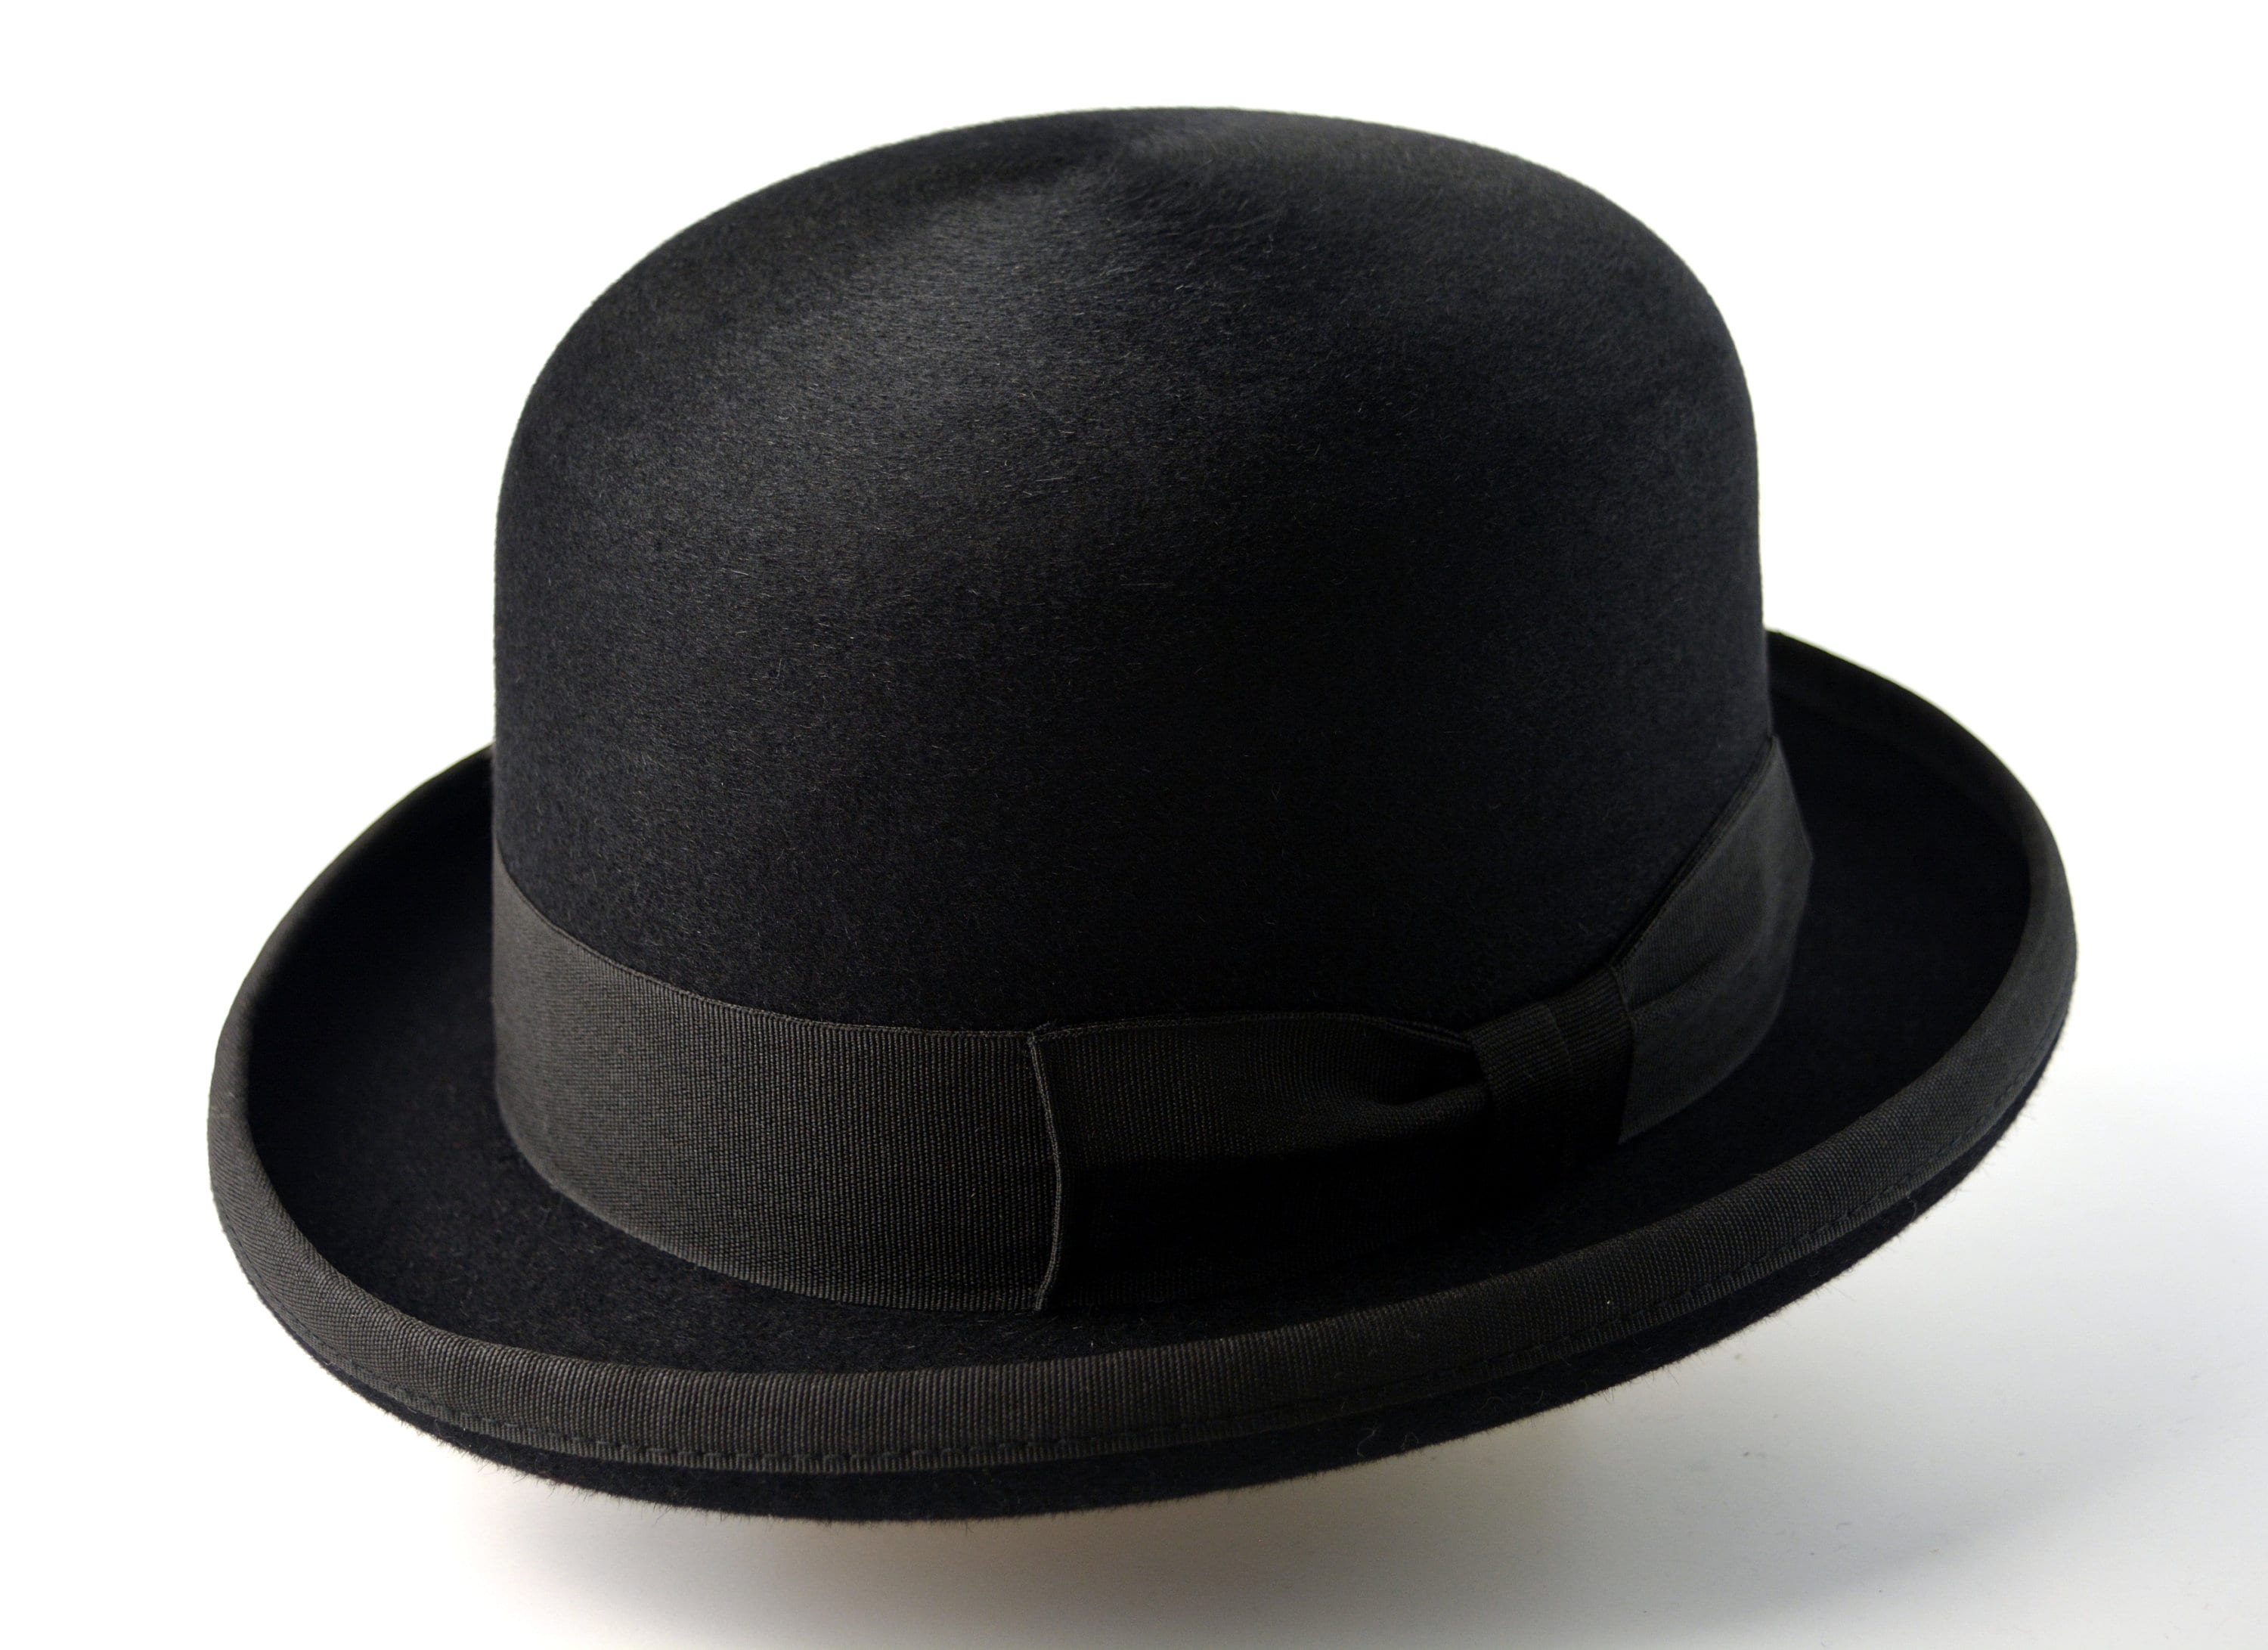 æg tapperhed lettelse Derby Hat the ASCOT Black Fur Felt Derby Bowler Hat for | Etsy